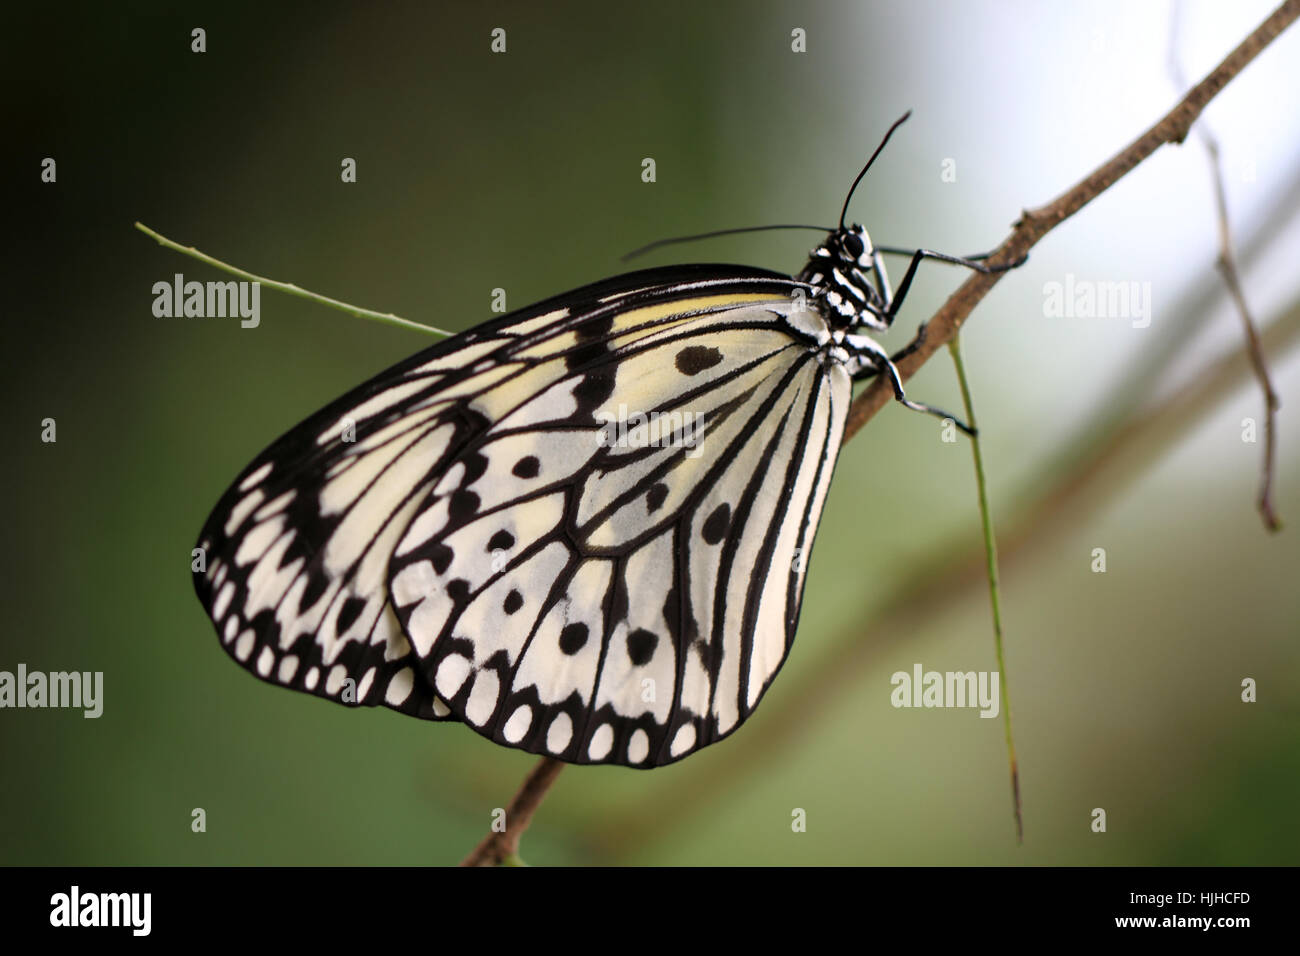 Butterfly, butterfly, ala, boschi, Tarma weisse baumnymphe, Idea leuconoe, Foto Stock